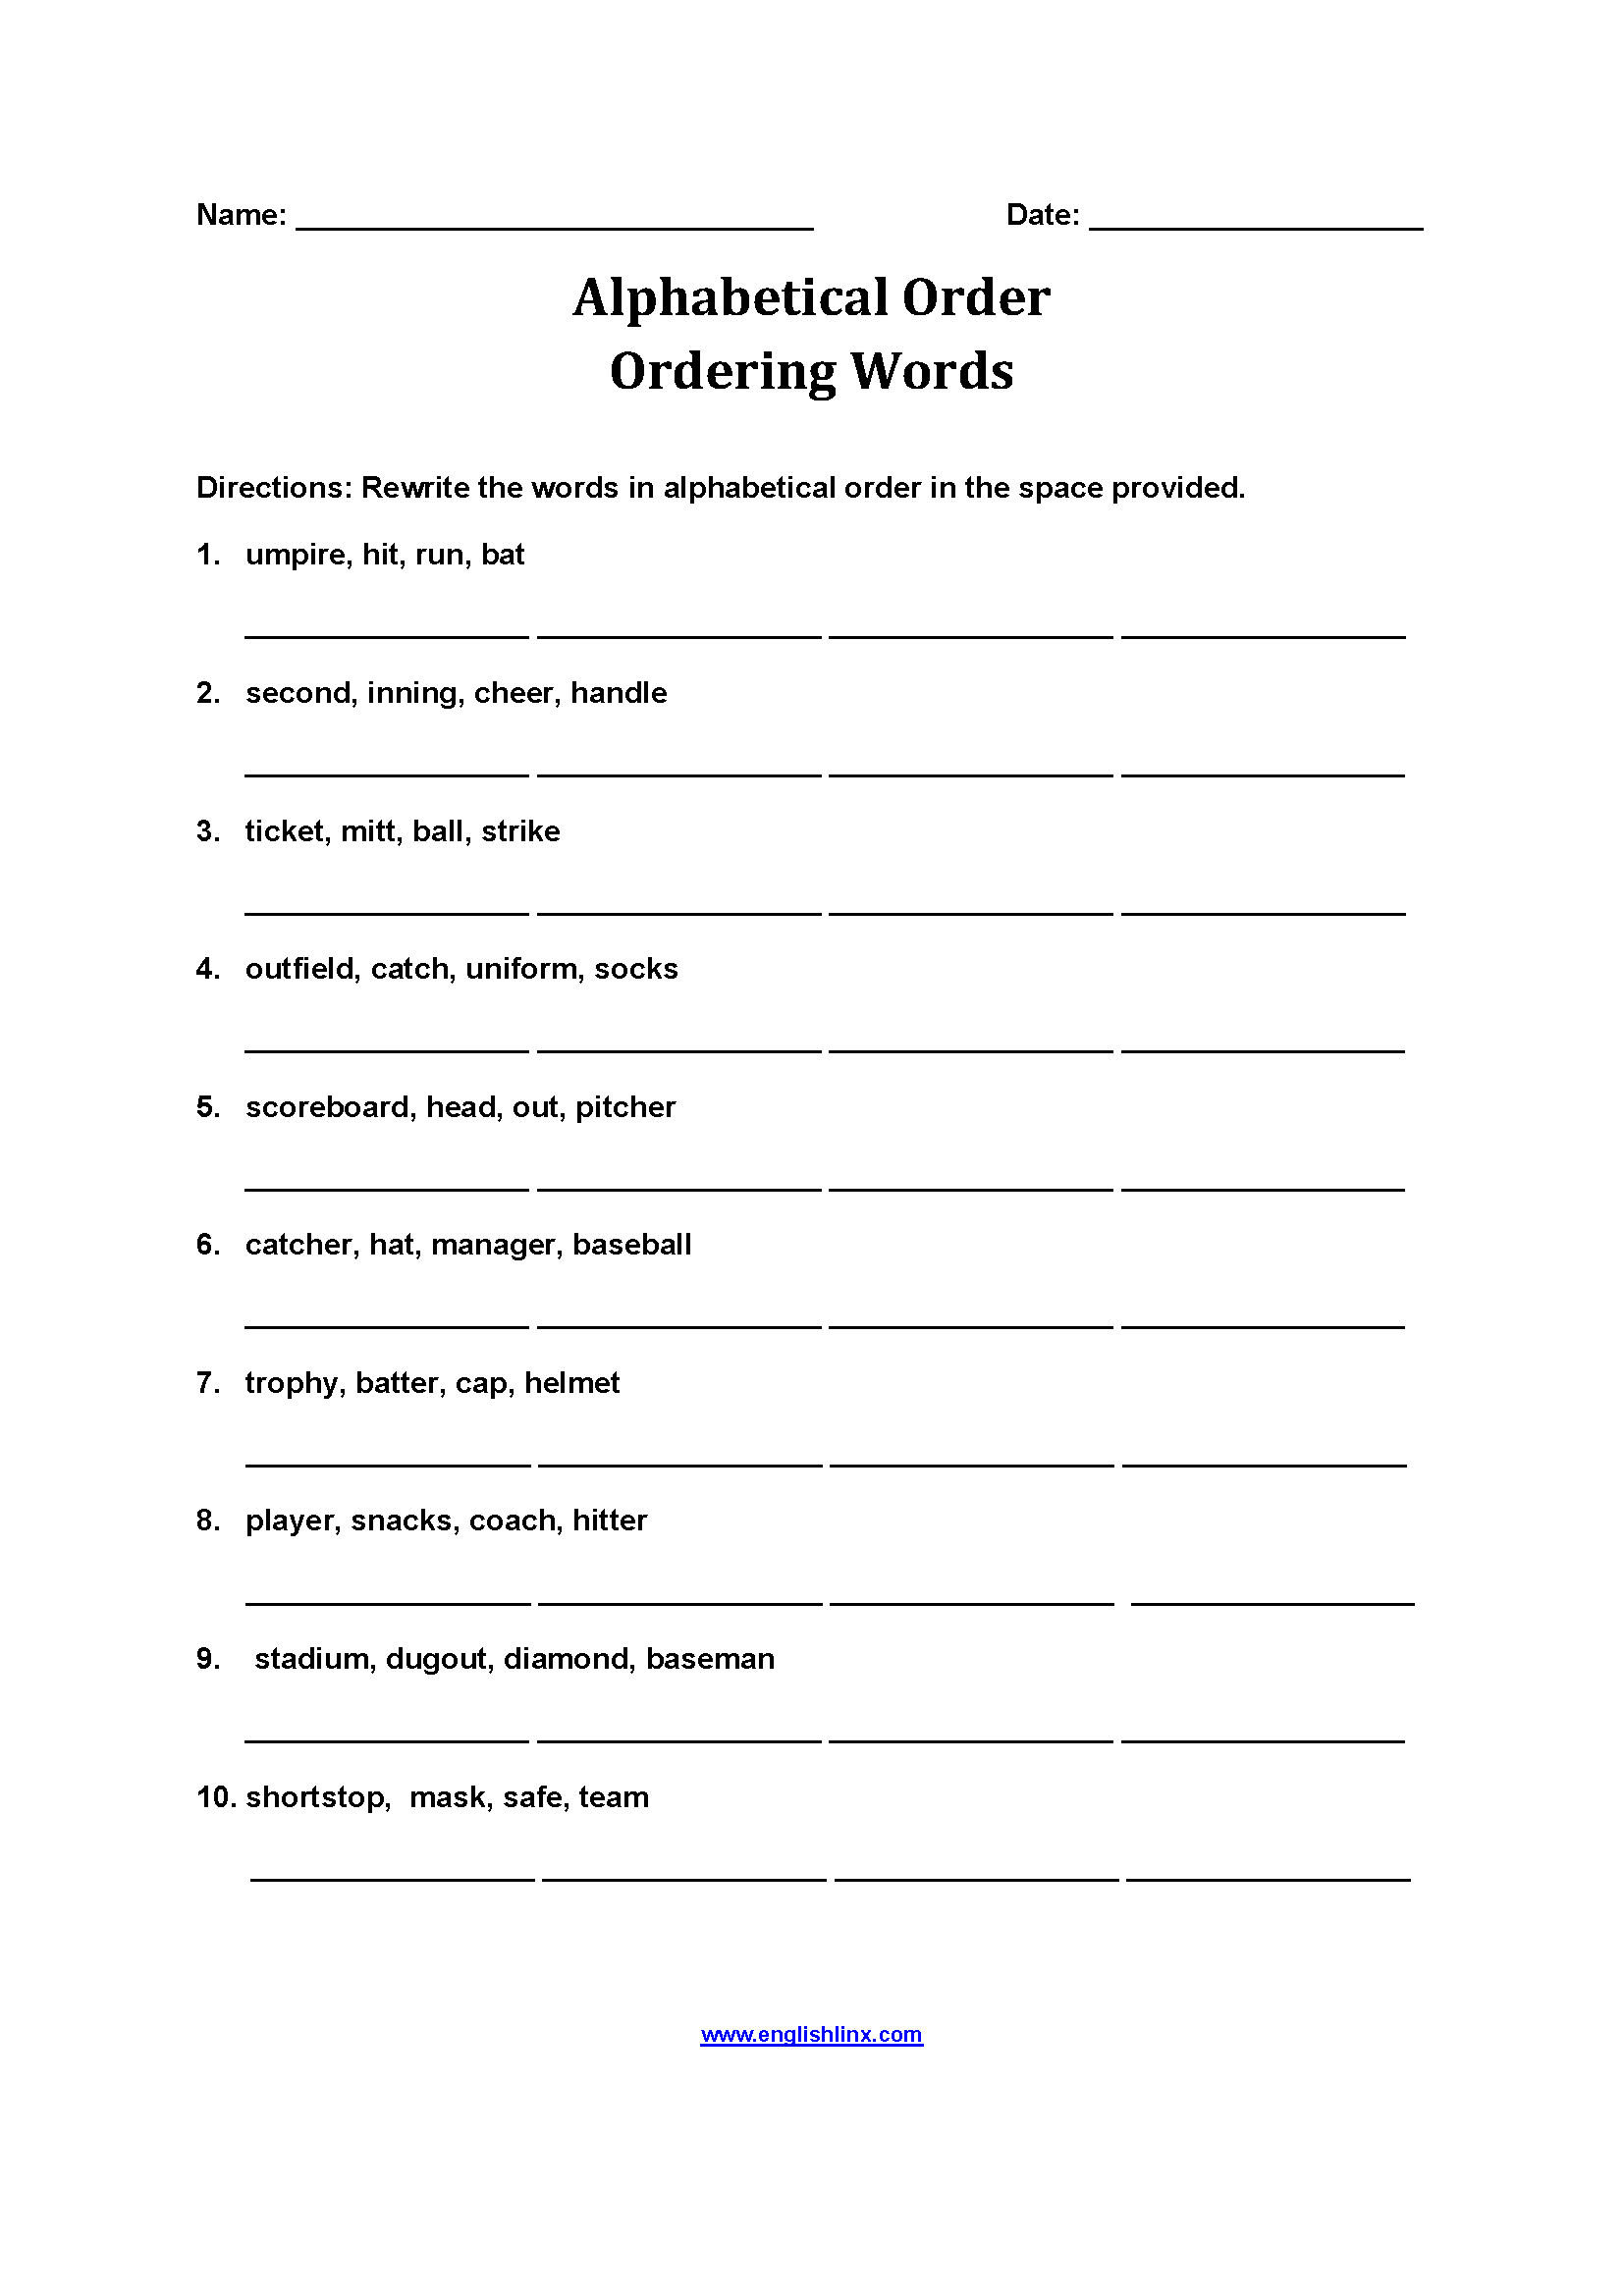 Ordering Words Alphabetical Order Worksheets